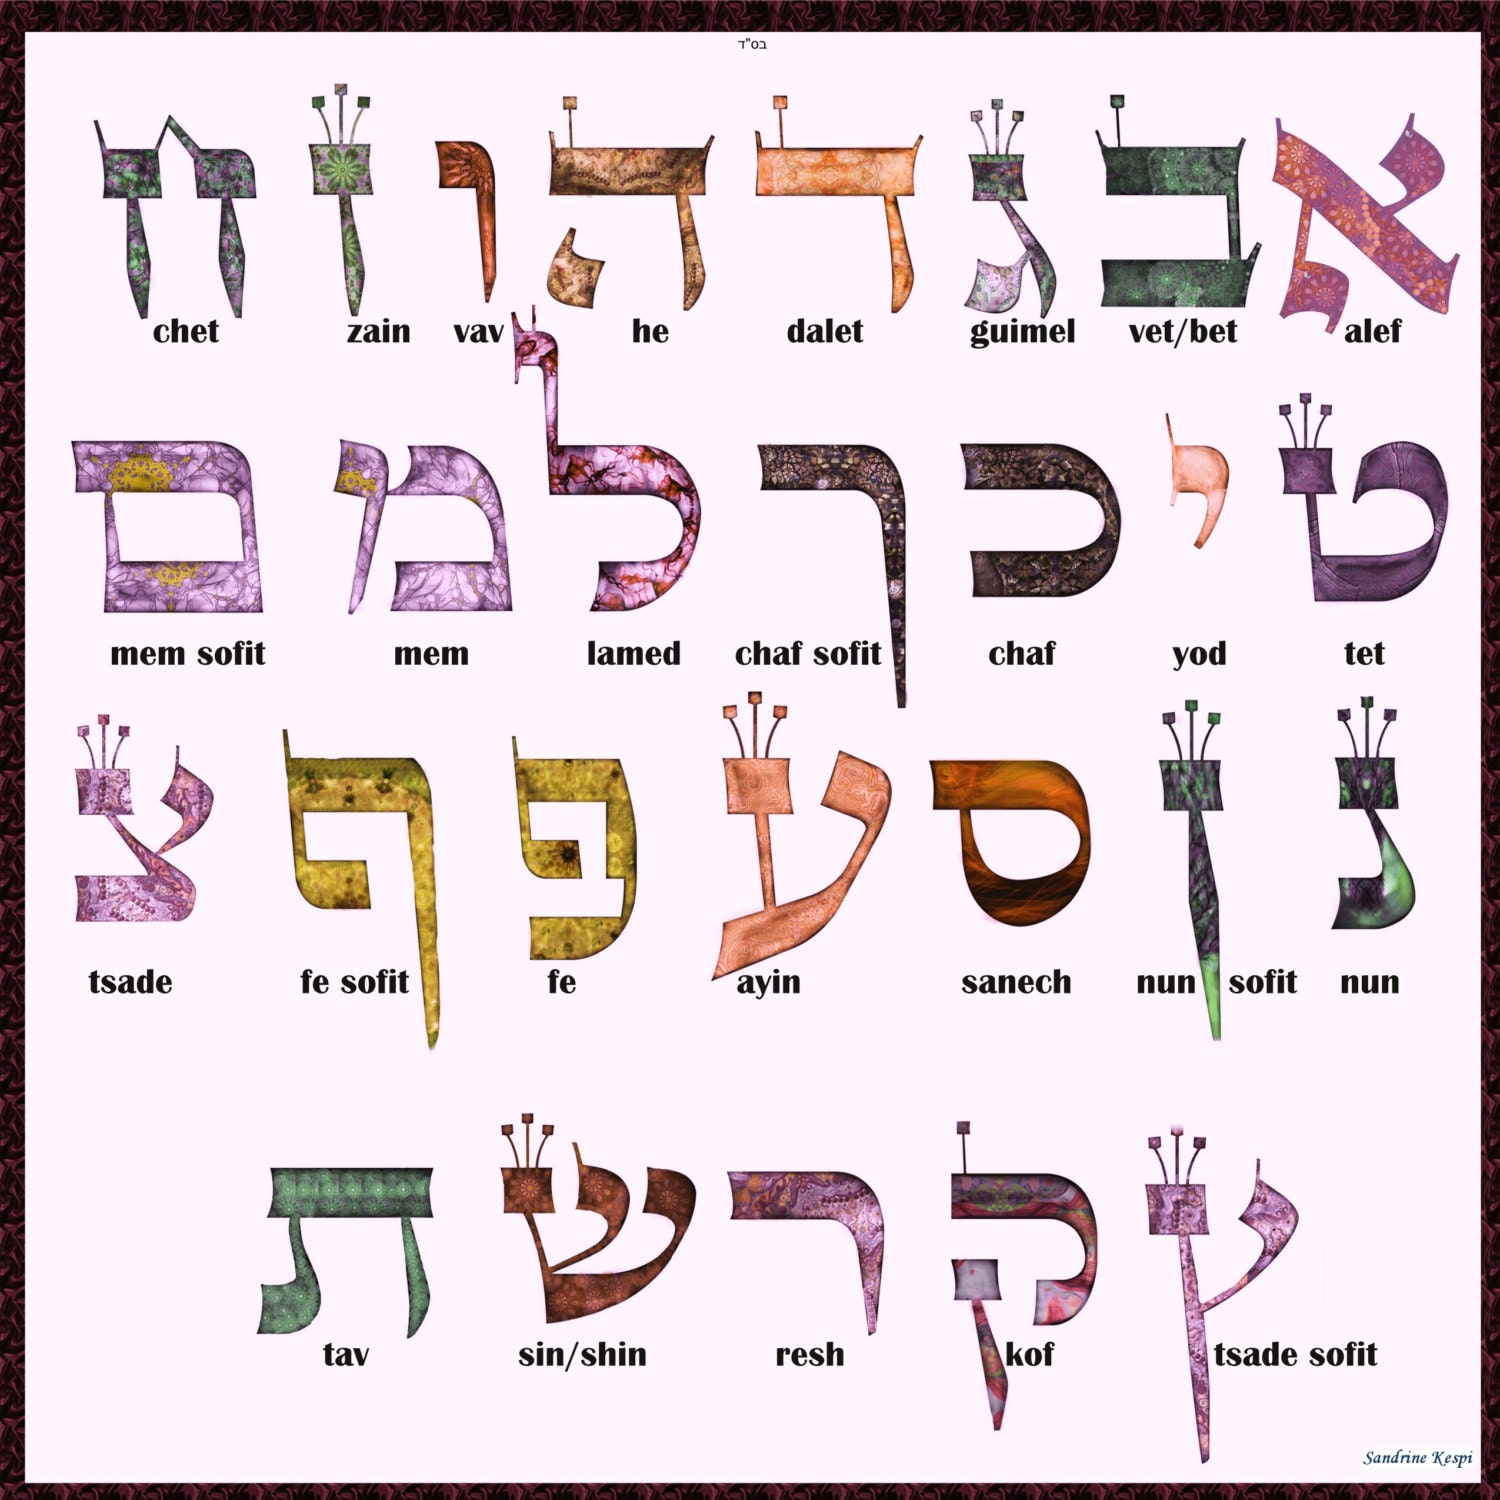 НУН софит буква еврейского алфавита